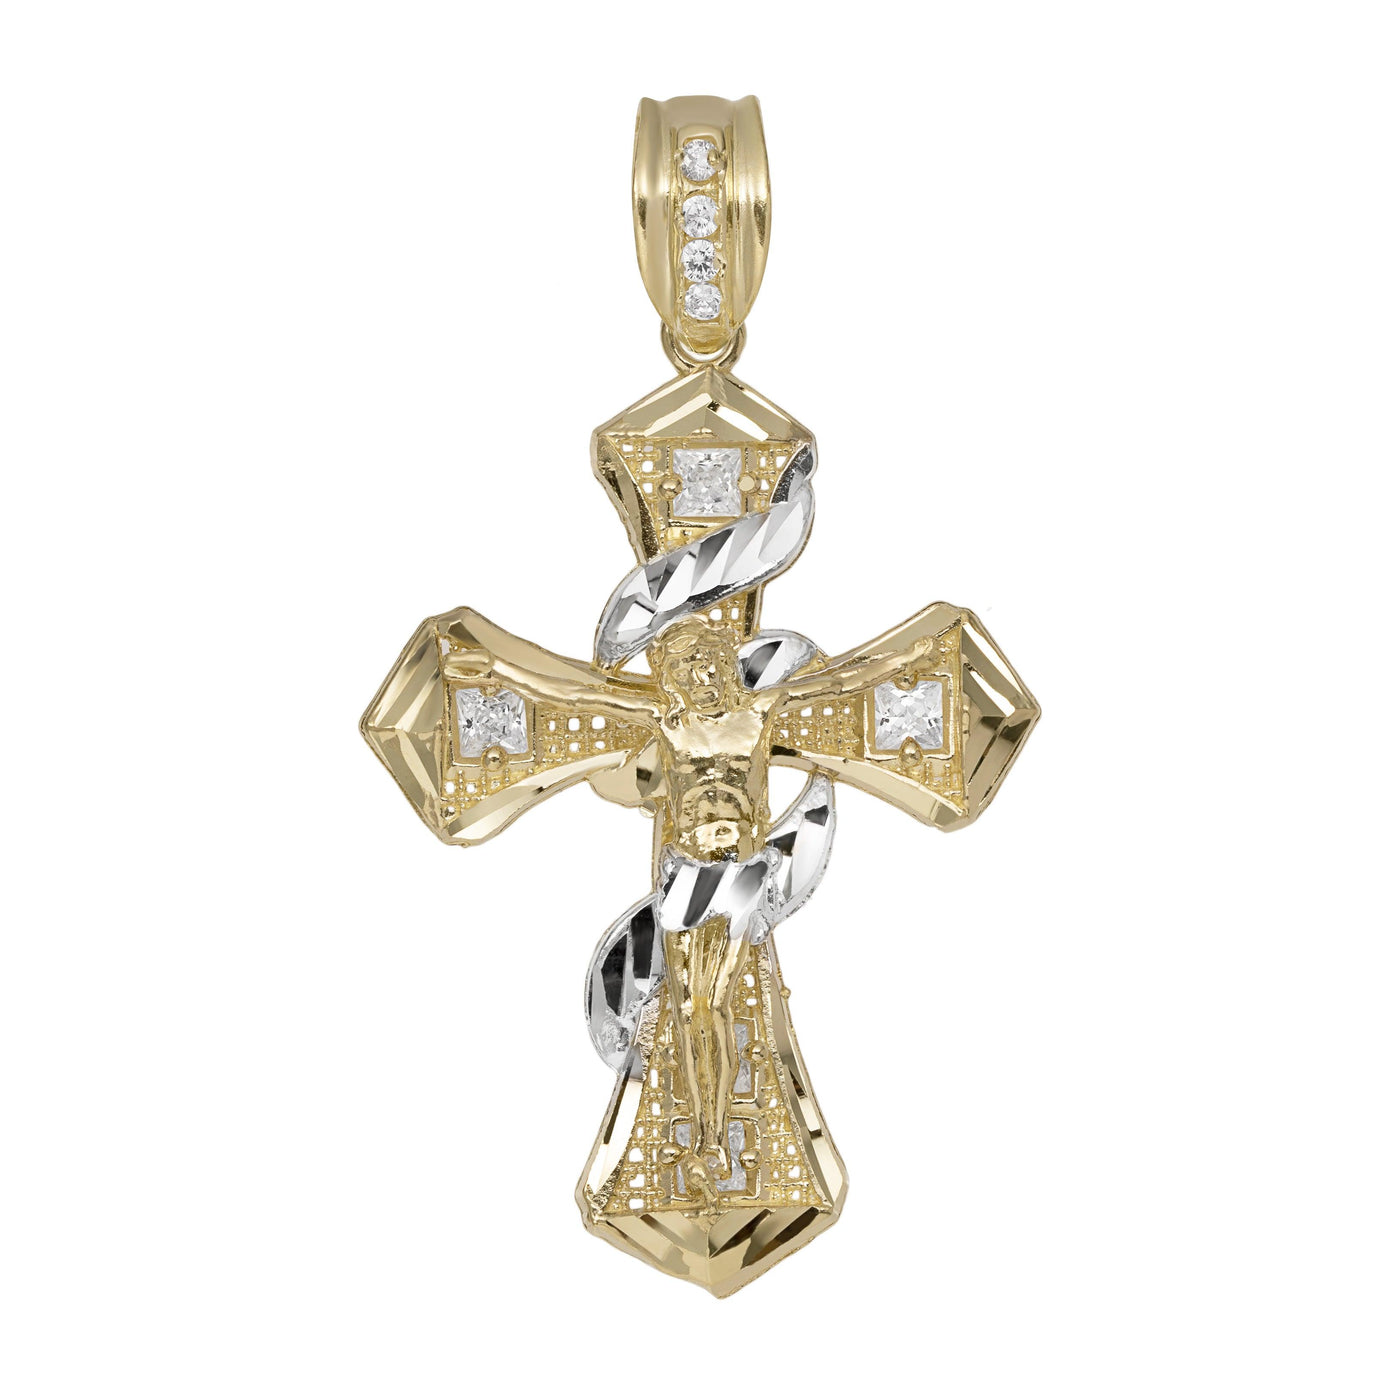 2" CZ Crucifix Cross Jesus Pendant 10K Yellow Gold - bayamjewelry